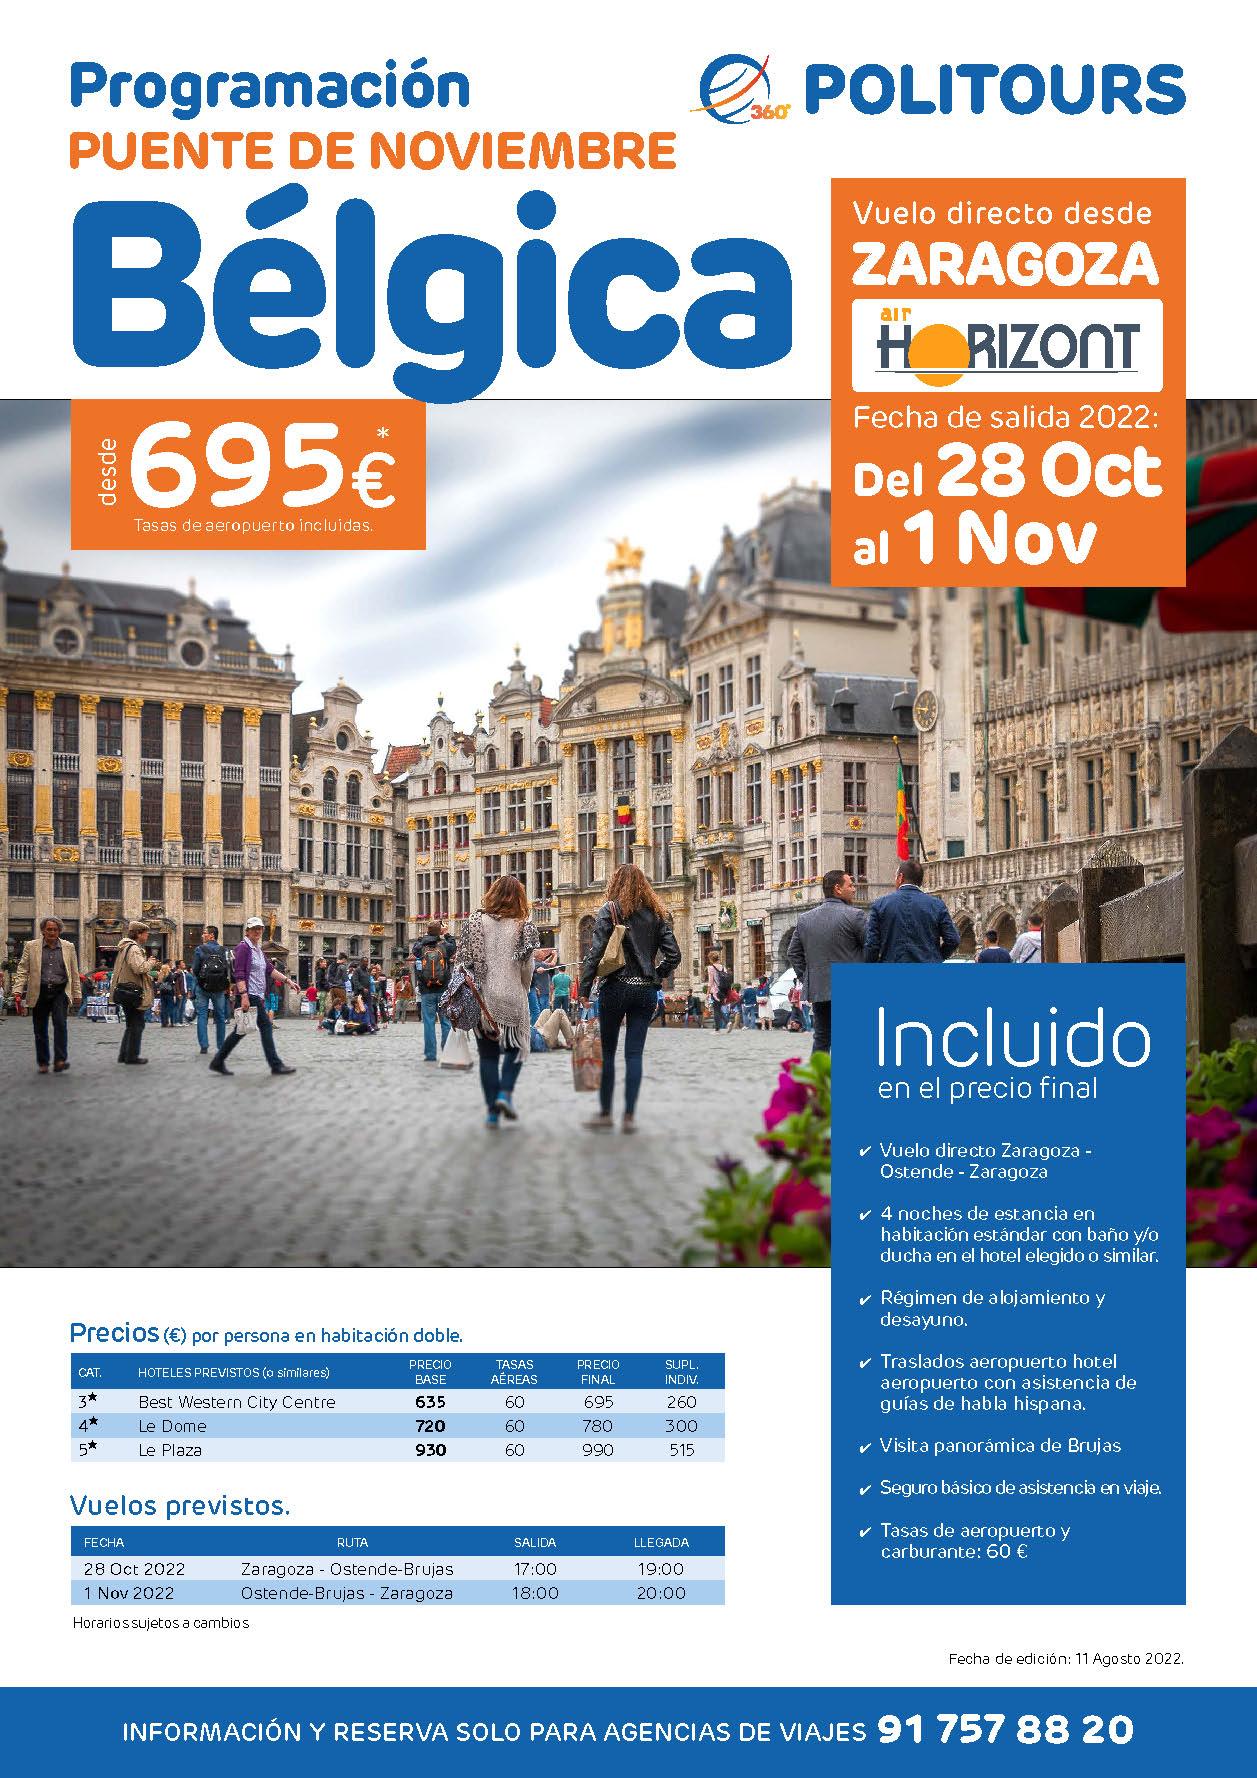 Oferta Politours Puente de Noviembre en Belgica salida el 28 Octubre en vuelo especial directo desde Zaragoza